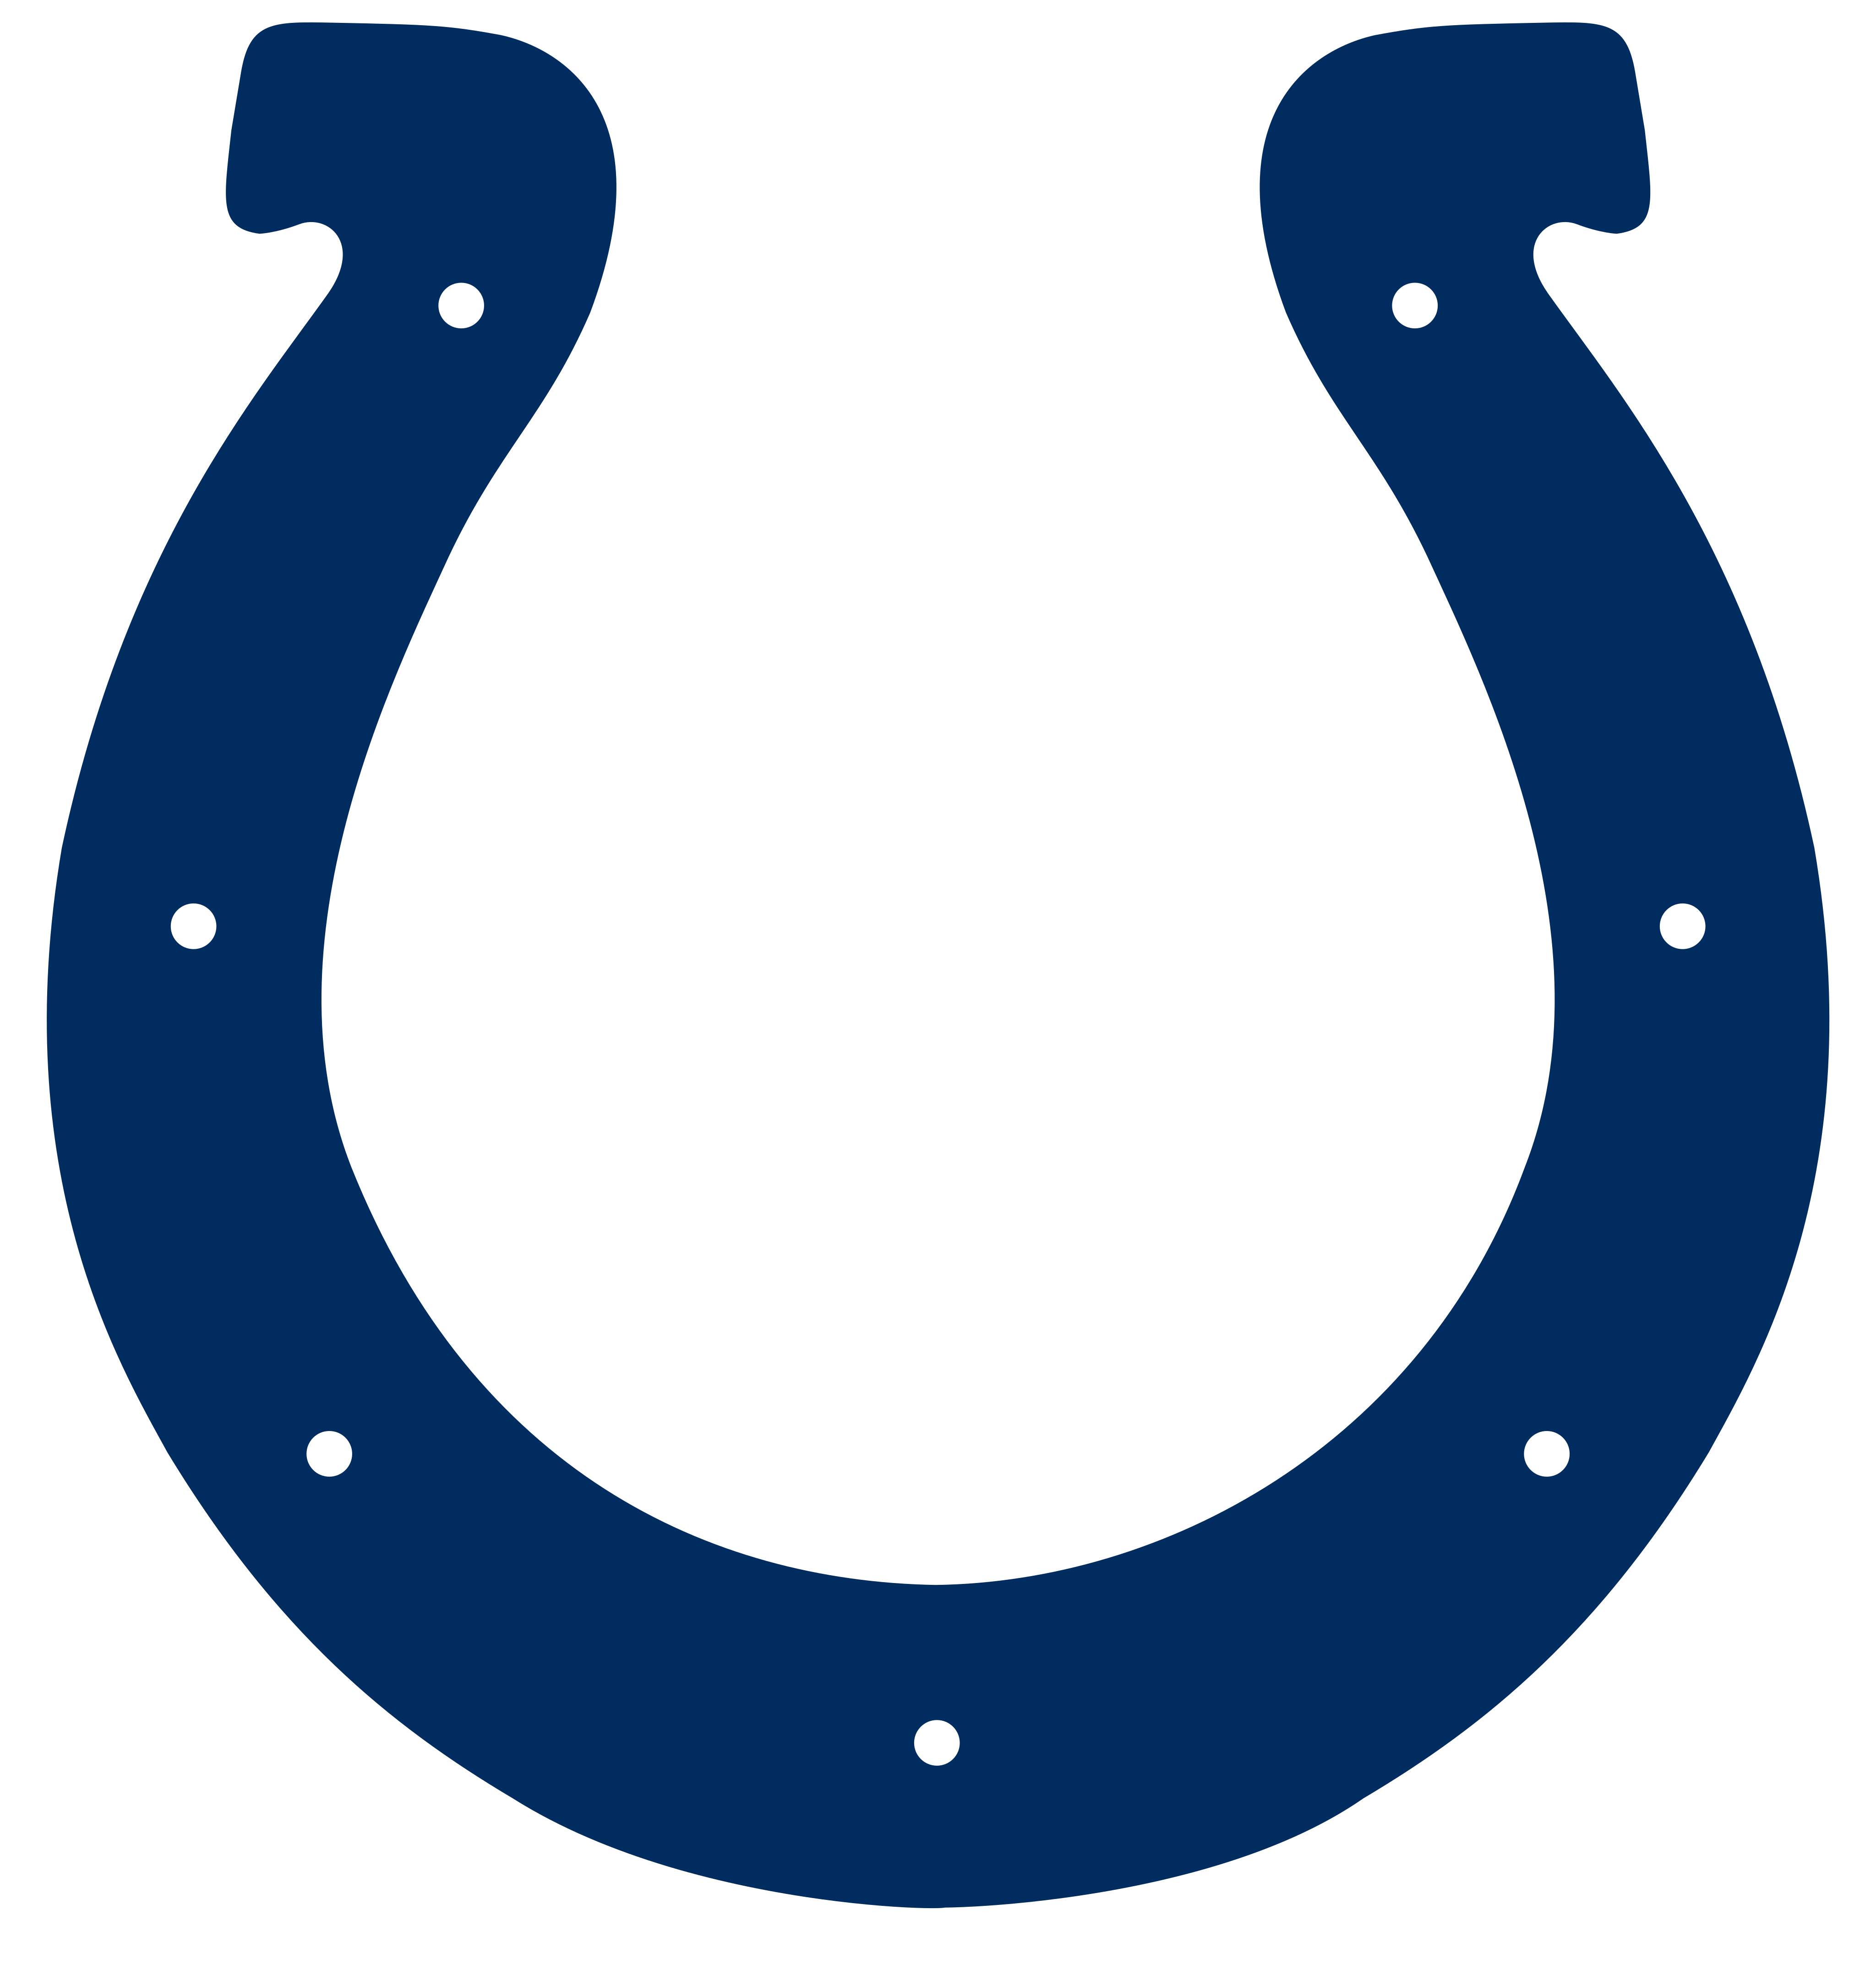 indianapolis colts logo - Indianapolis Colts Logo